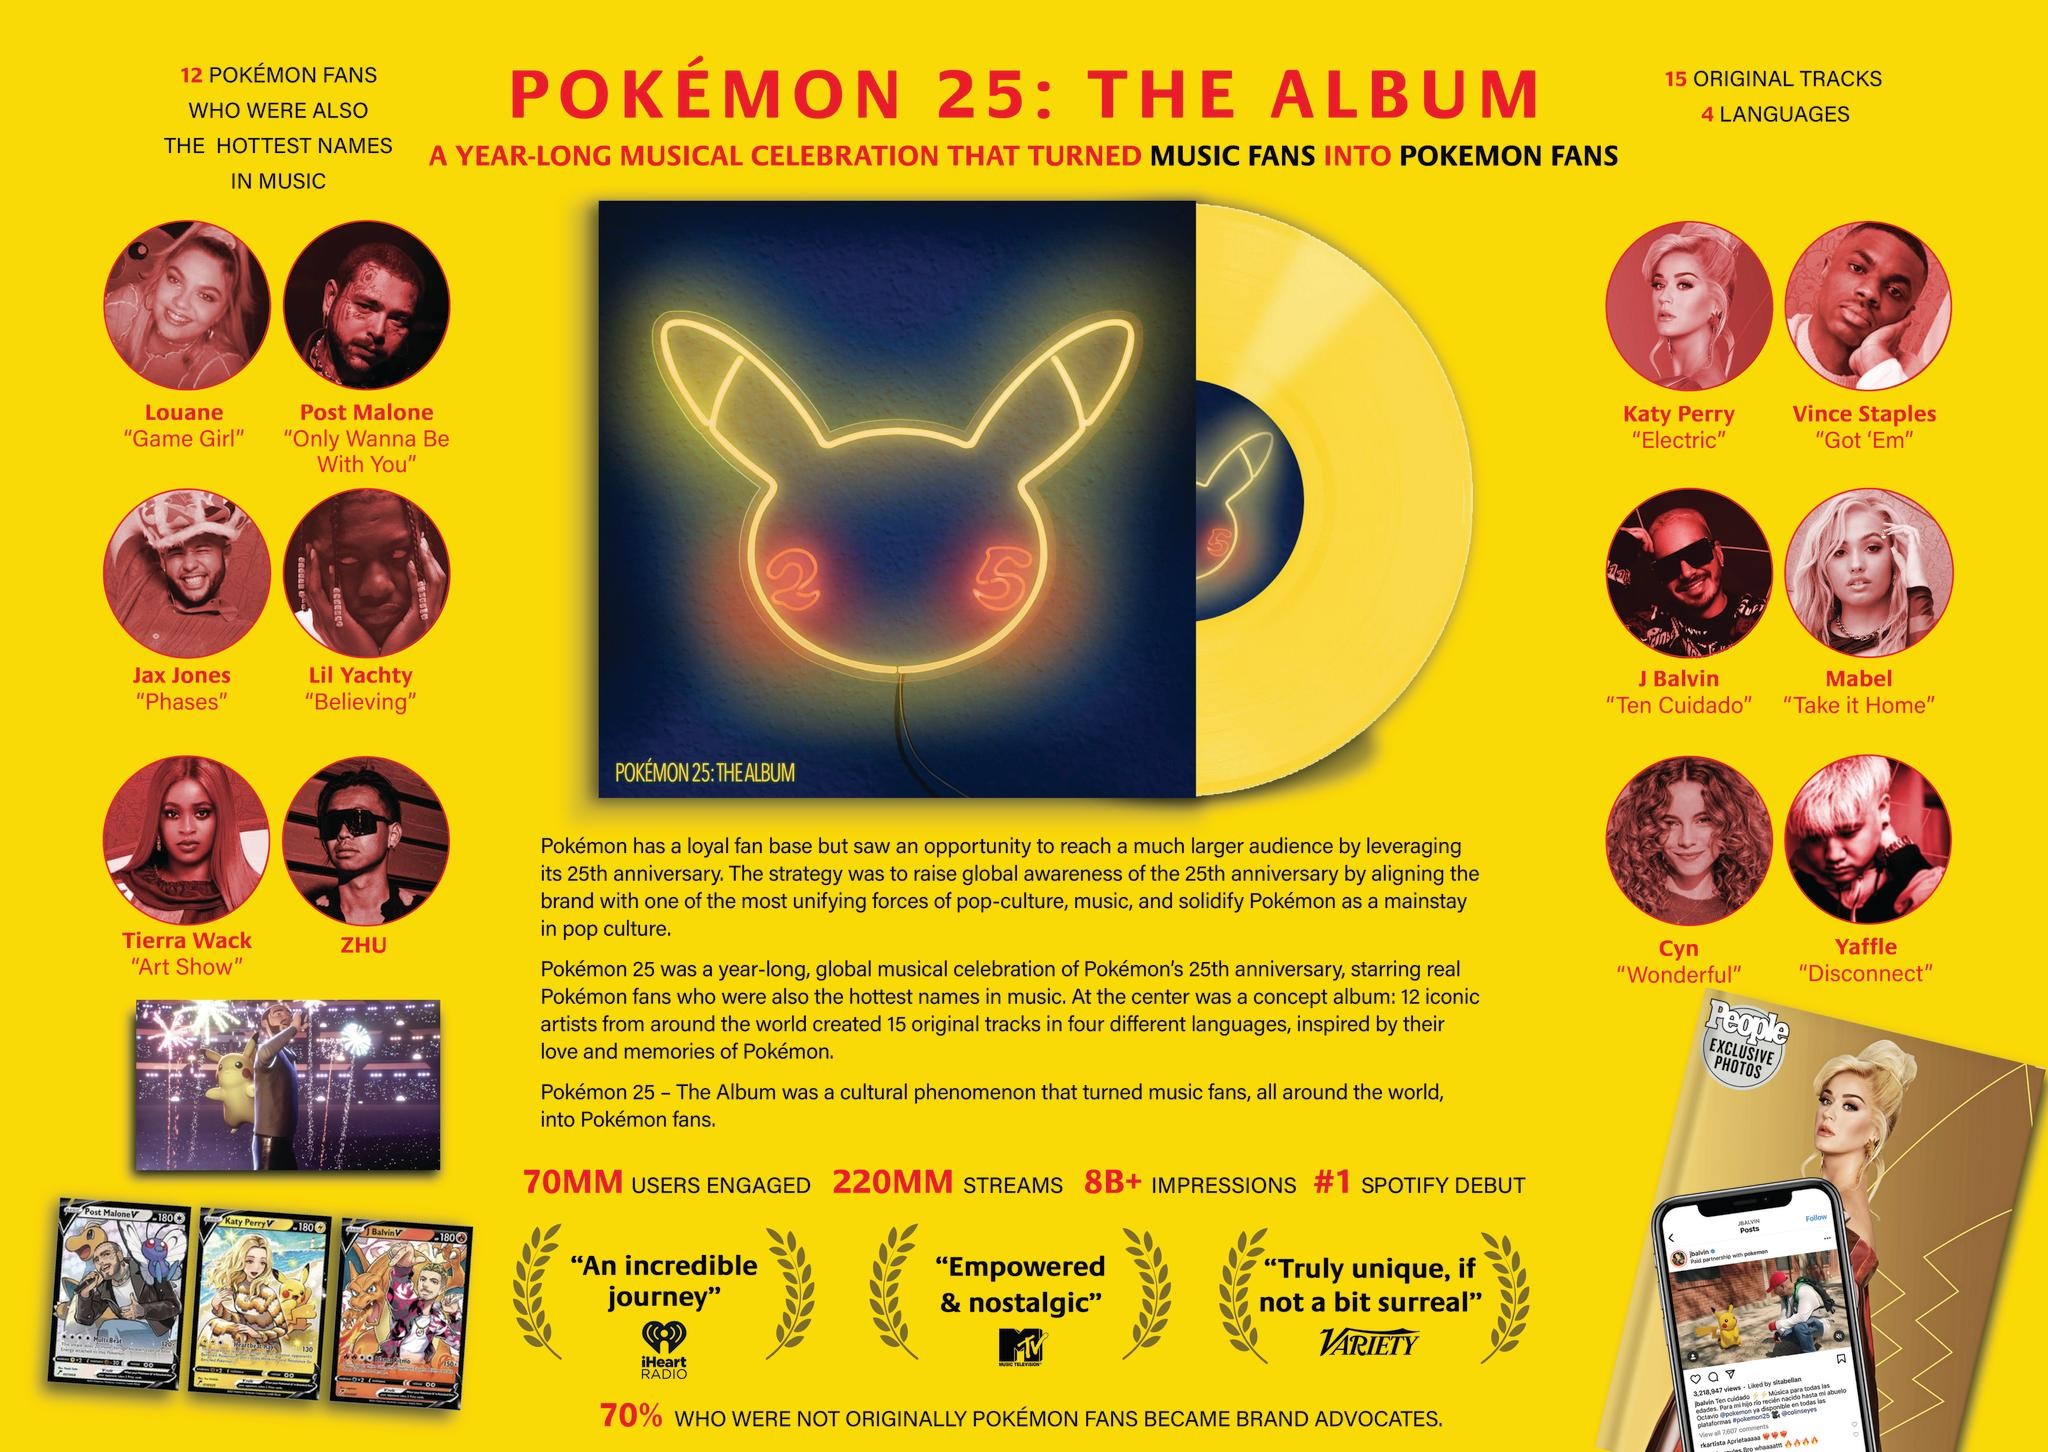 Pokémon 25: The Album